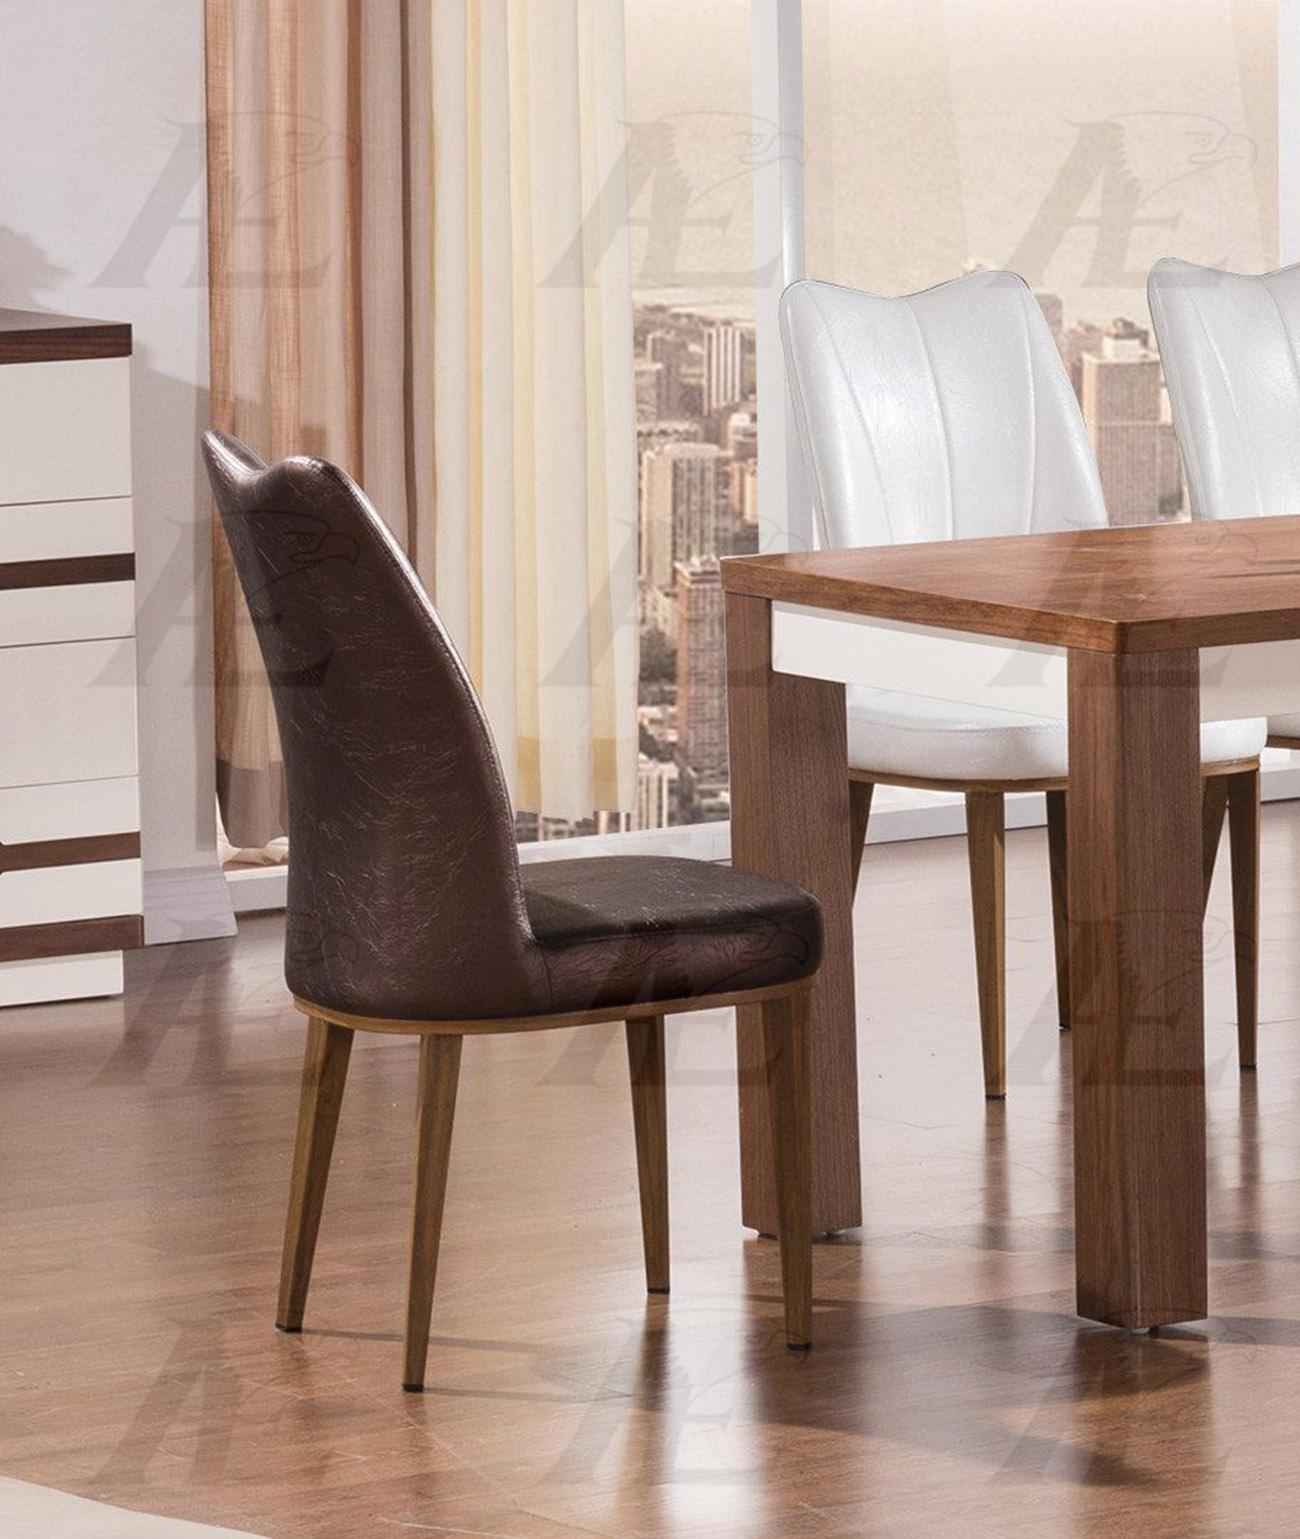 

    
American Eagle Furniture DT-D519 Dining Sets Ivory/Dark Brown DT-D519 CK-D519-DB-SET 5Pcs
